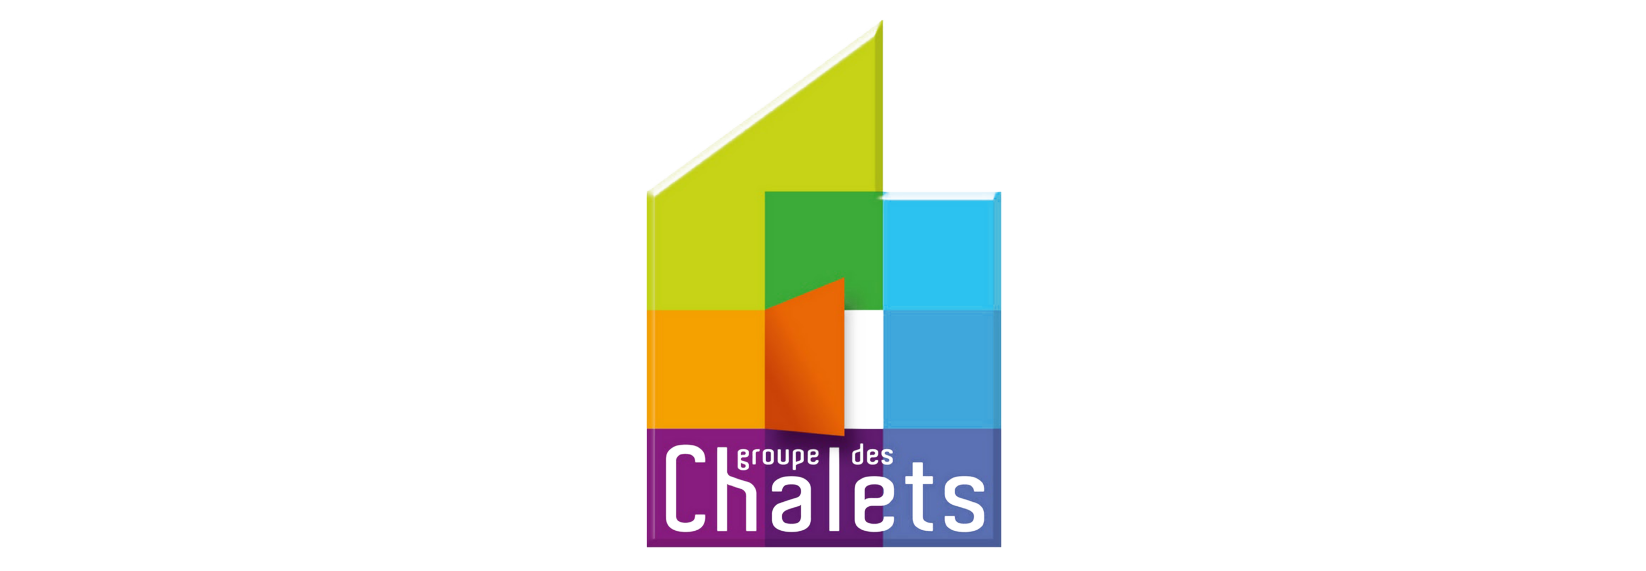 Groupe des Chalets